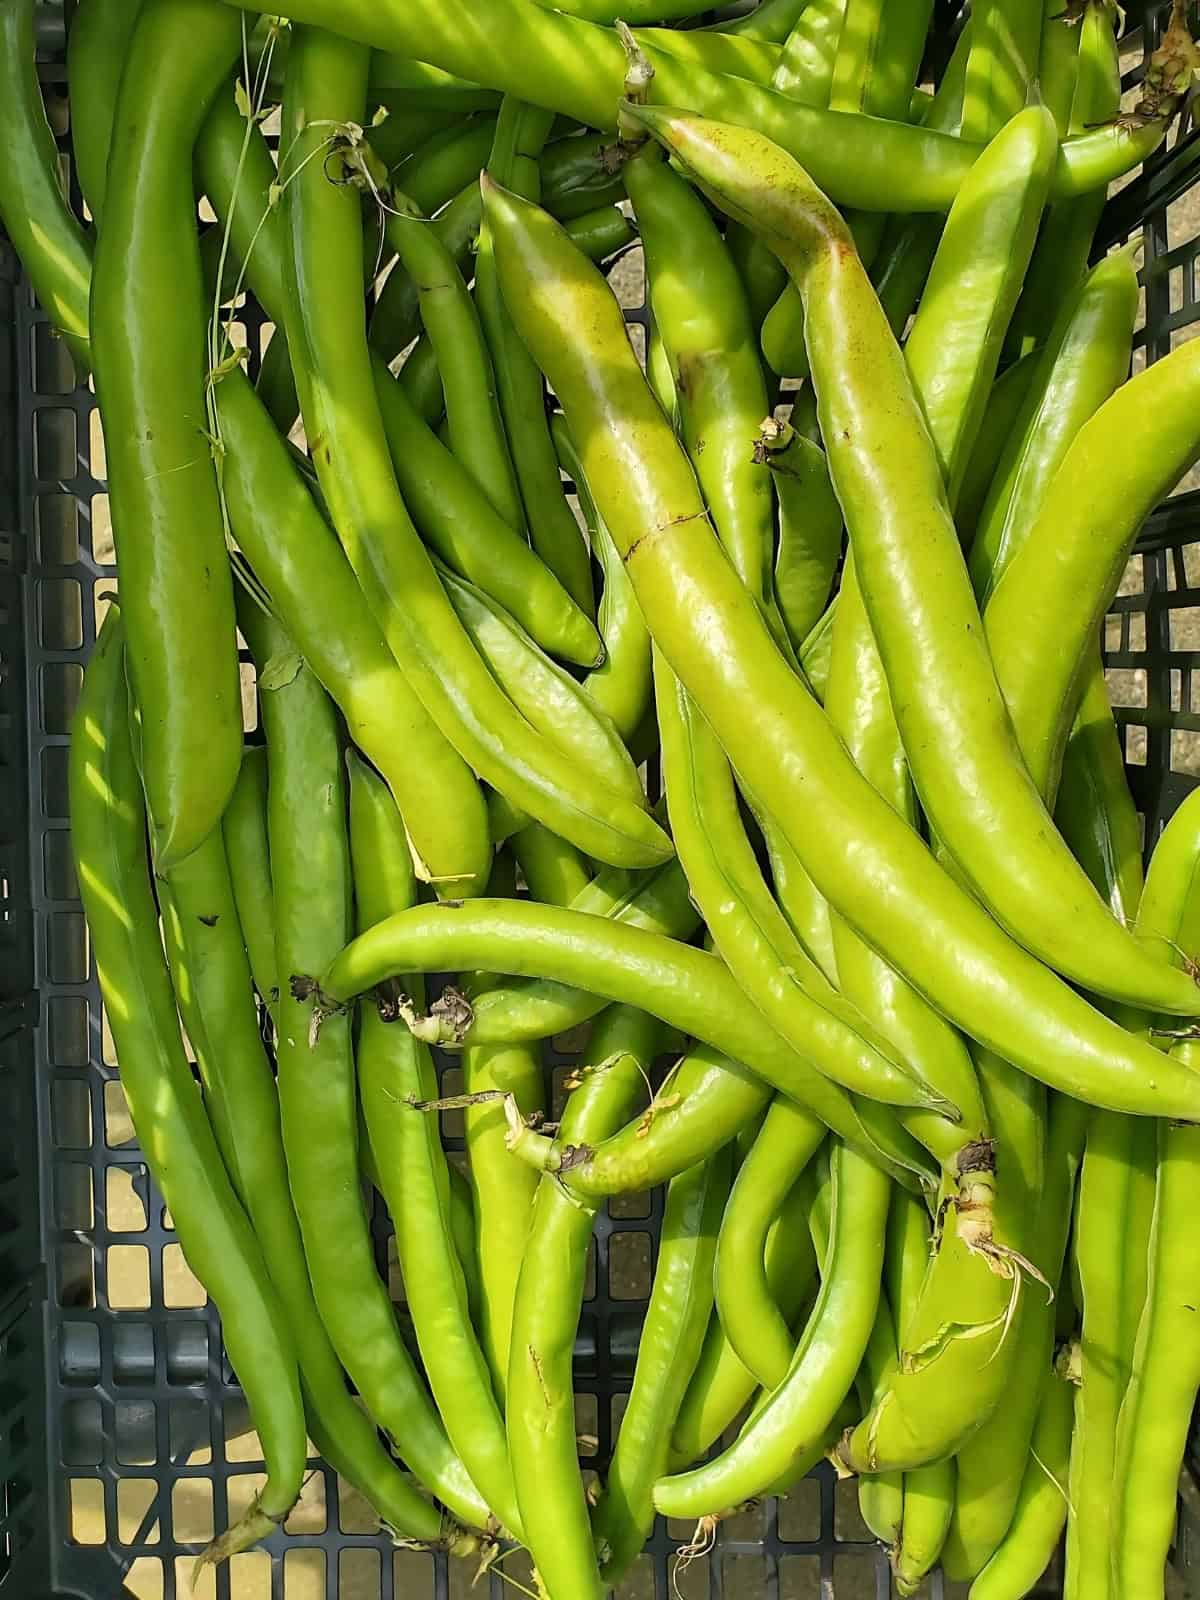 Fresh fava beans in a shopping basket.